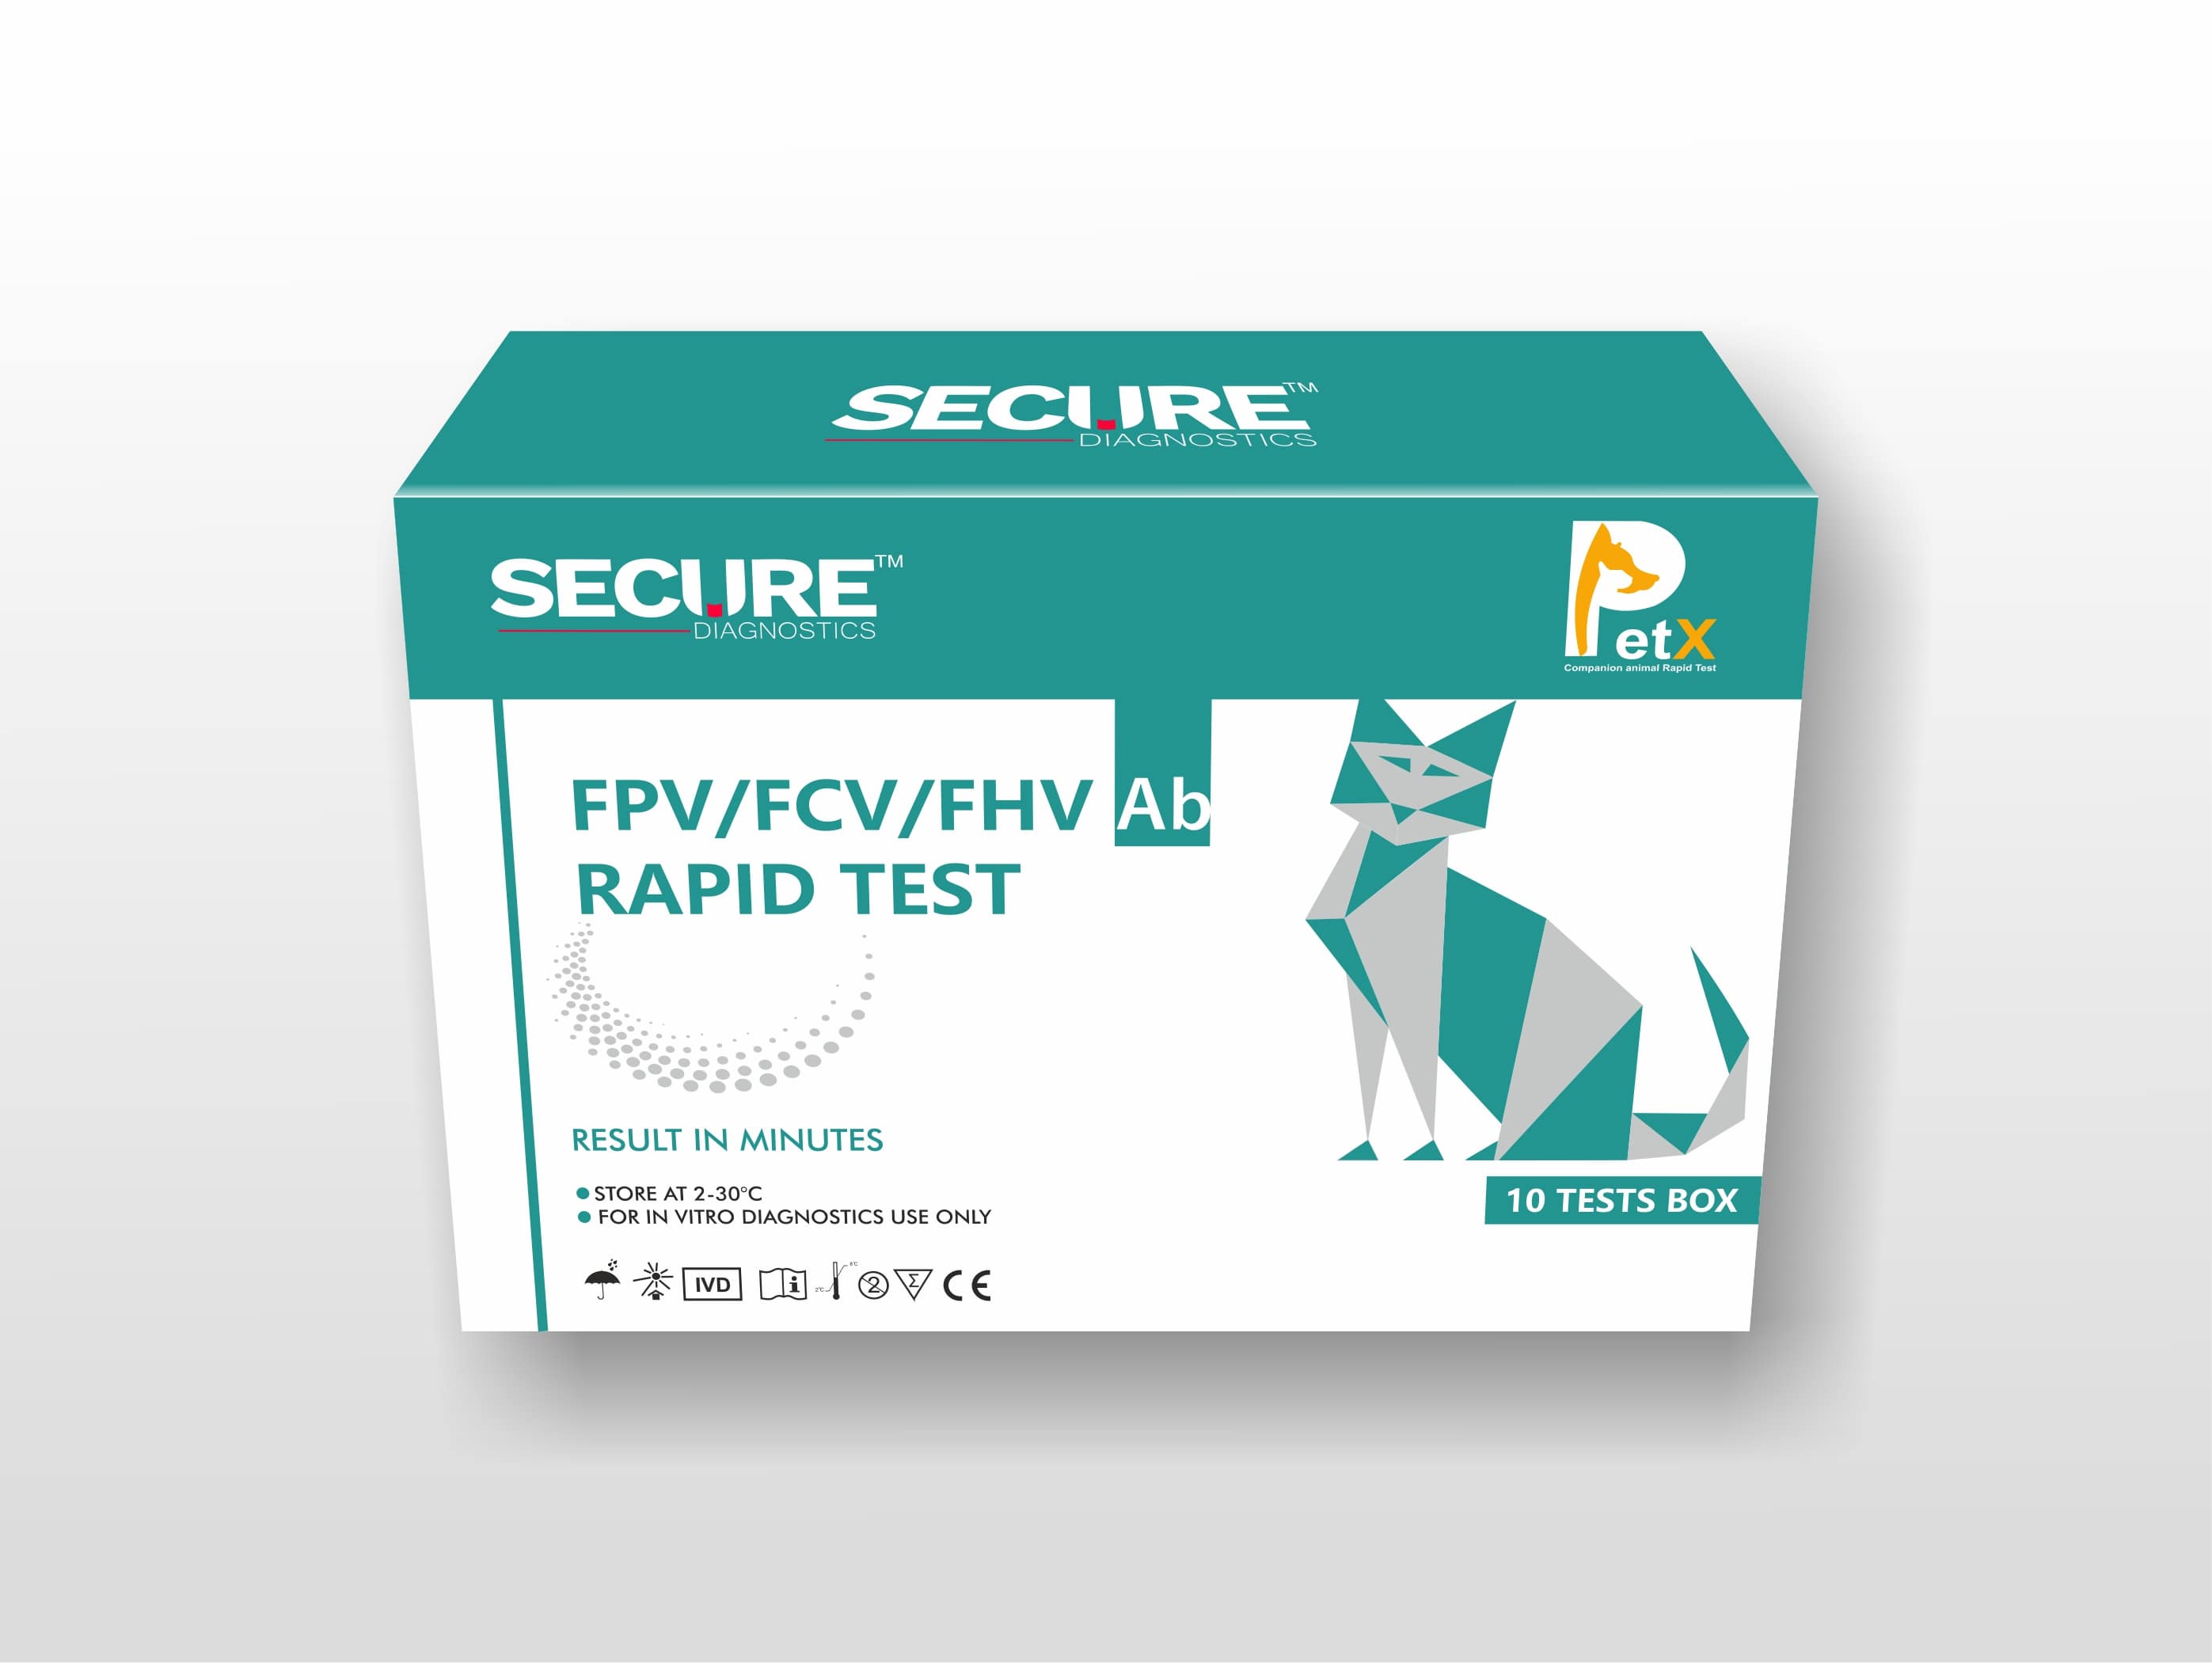 Feline Parvovirus/Feline Calicivirus/Feline Herpesvirus FPV/FCV/FHV Ab Test kit